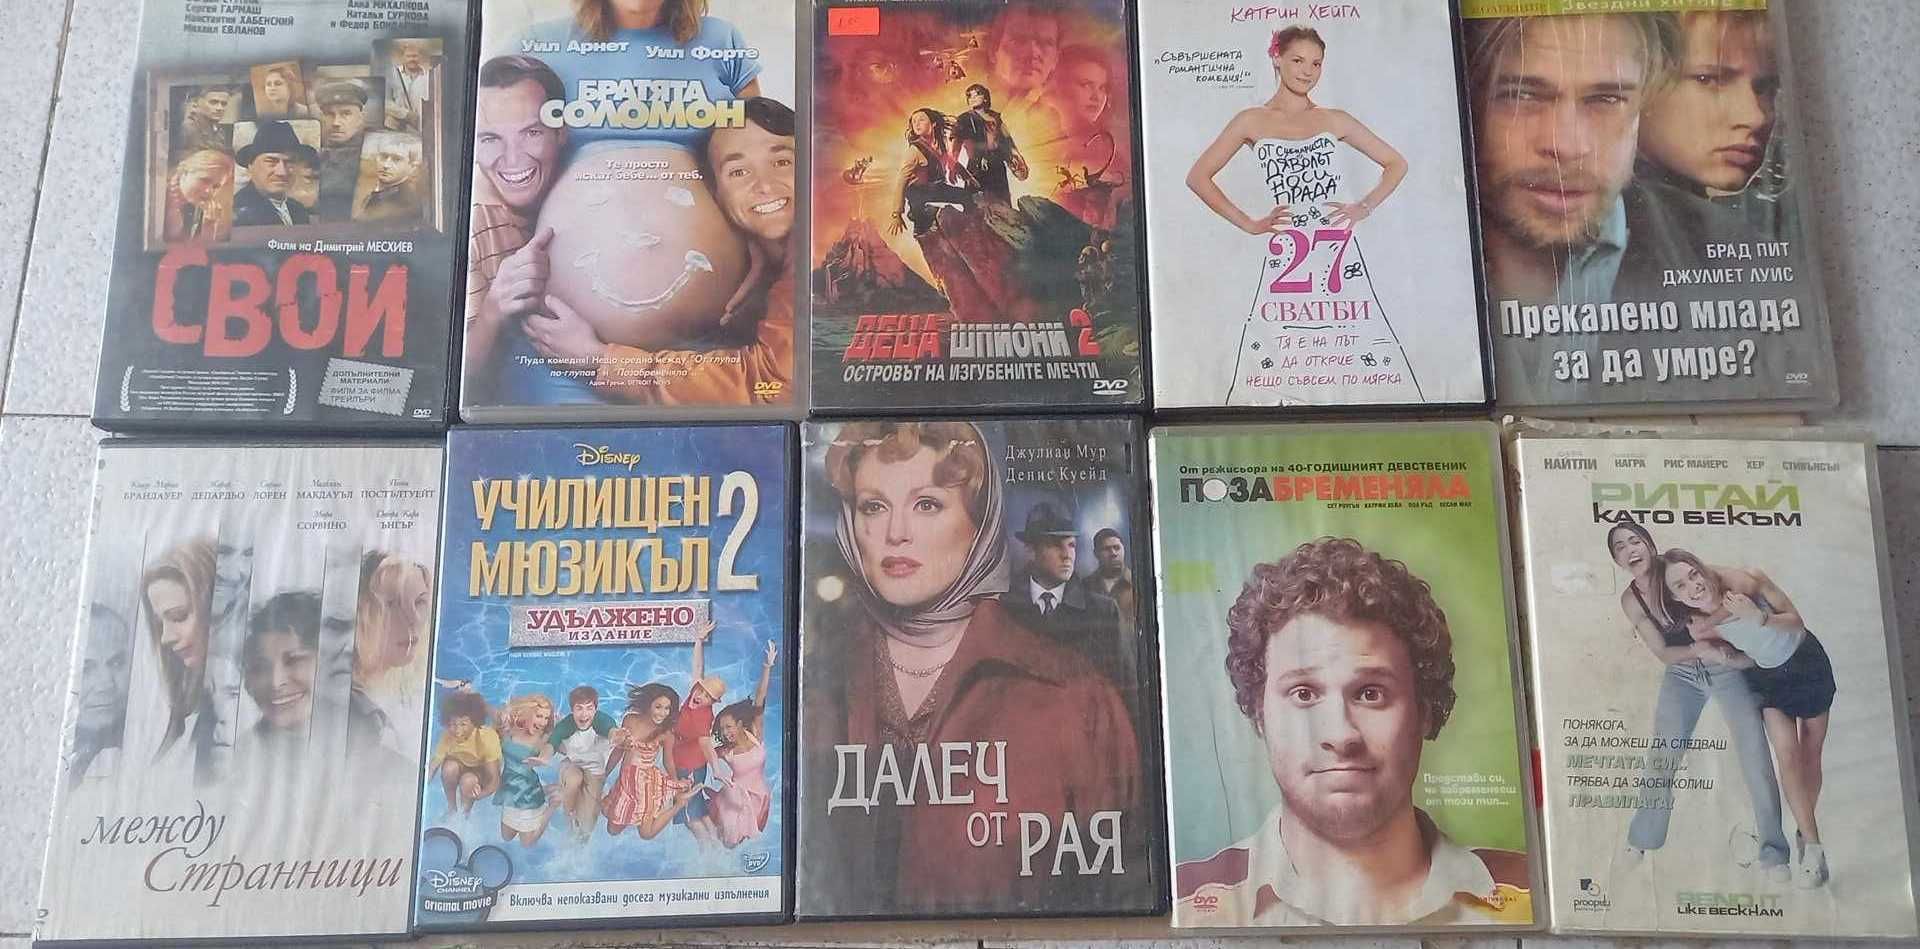 Продавам оригинални ДВД дискове с български субтитри.